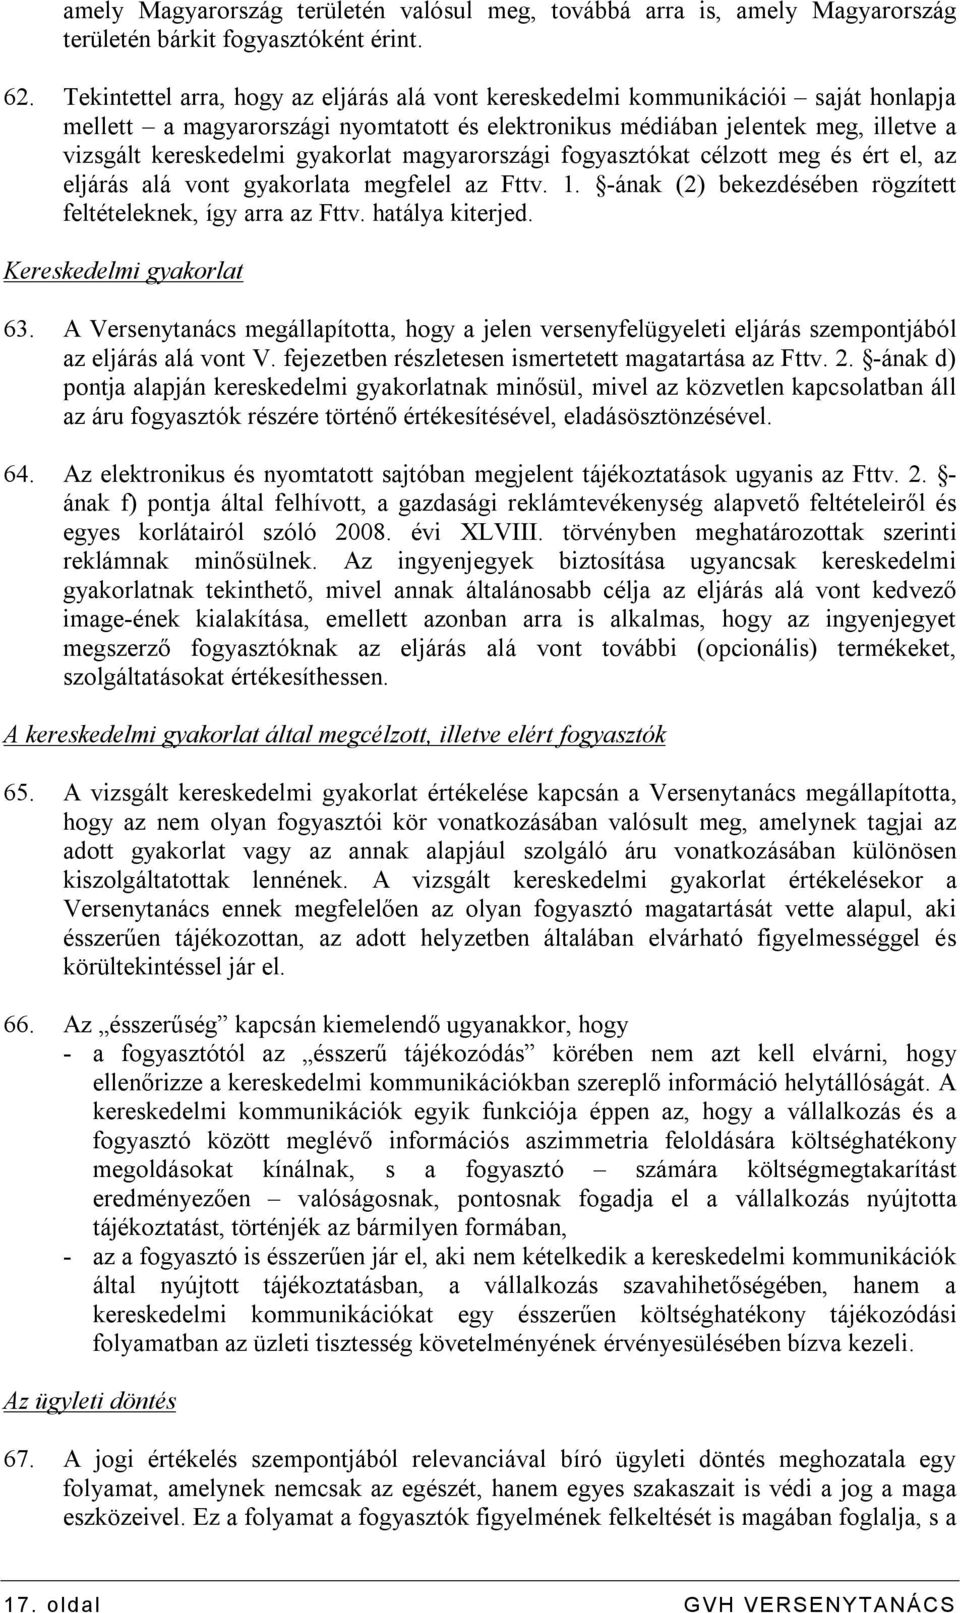 gyakorlat magyarországi fogyasztókat célzott meg és ért el, az eljárás alá vont gyakorlata megfelel az Fttv. 1. -ának (2) bekezdésében rögzített feltételeknek, így arra az Fttv. hatálya kiterjed.